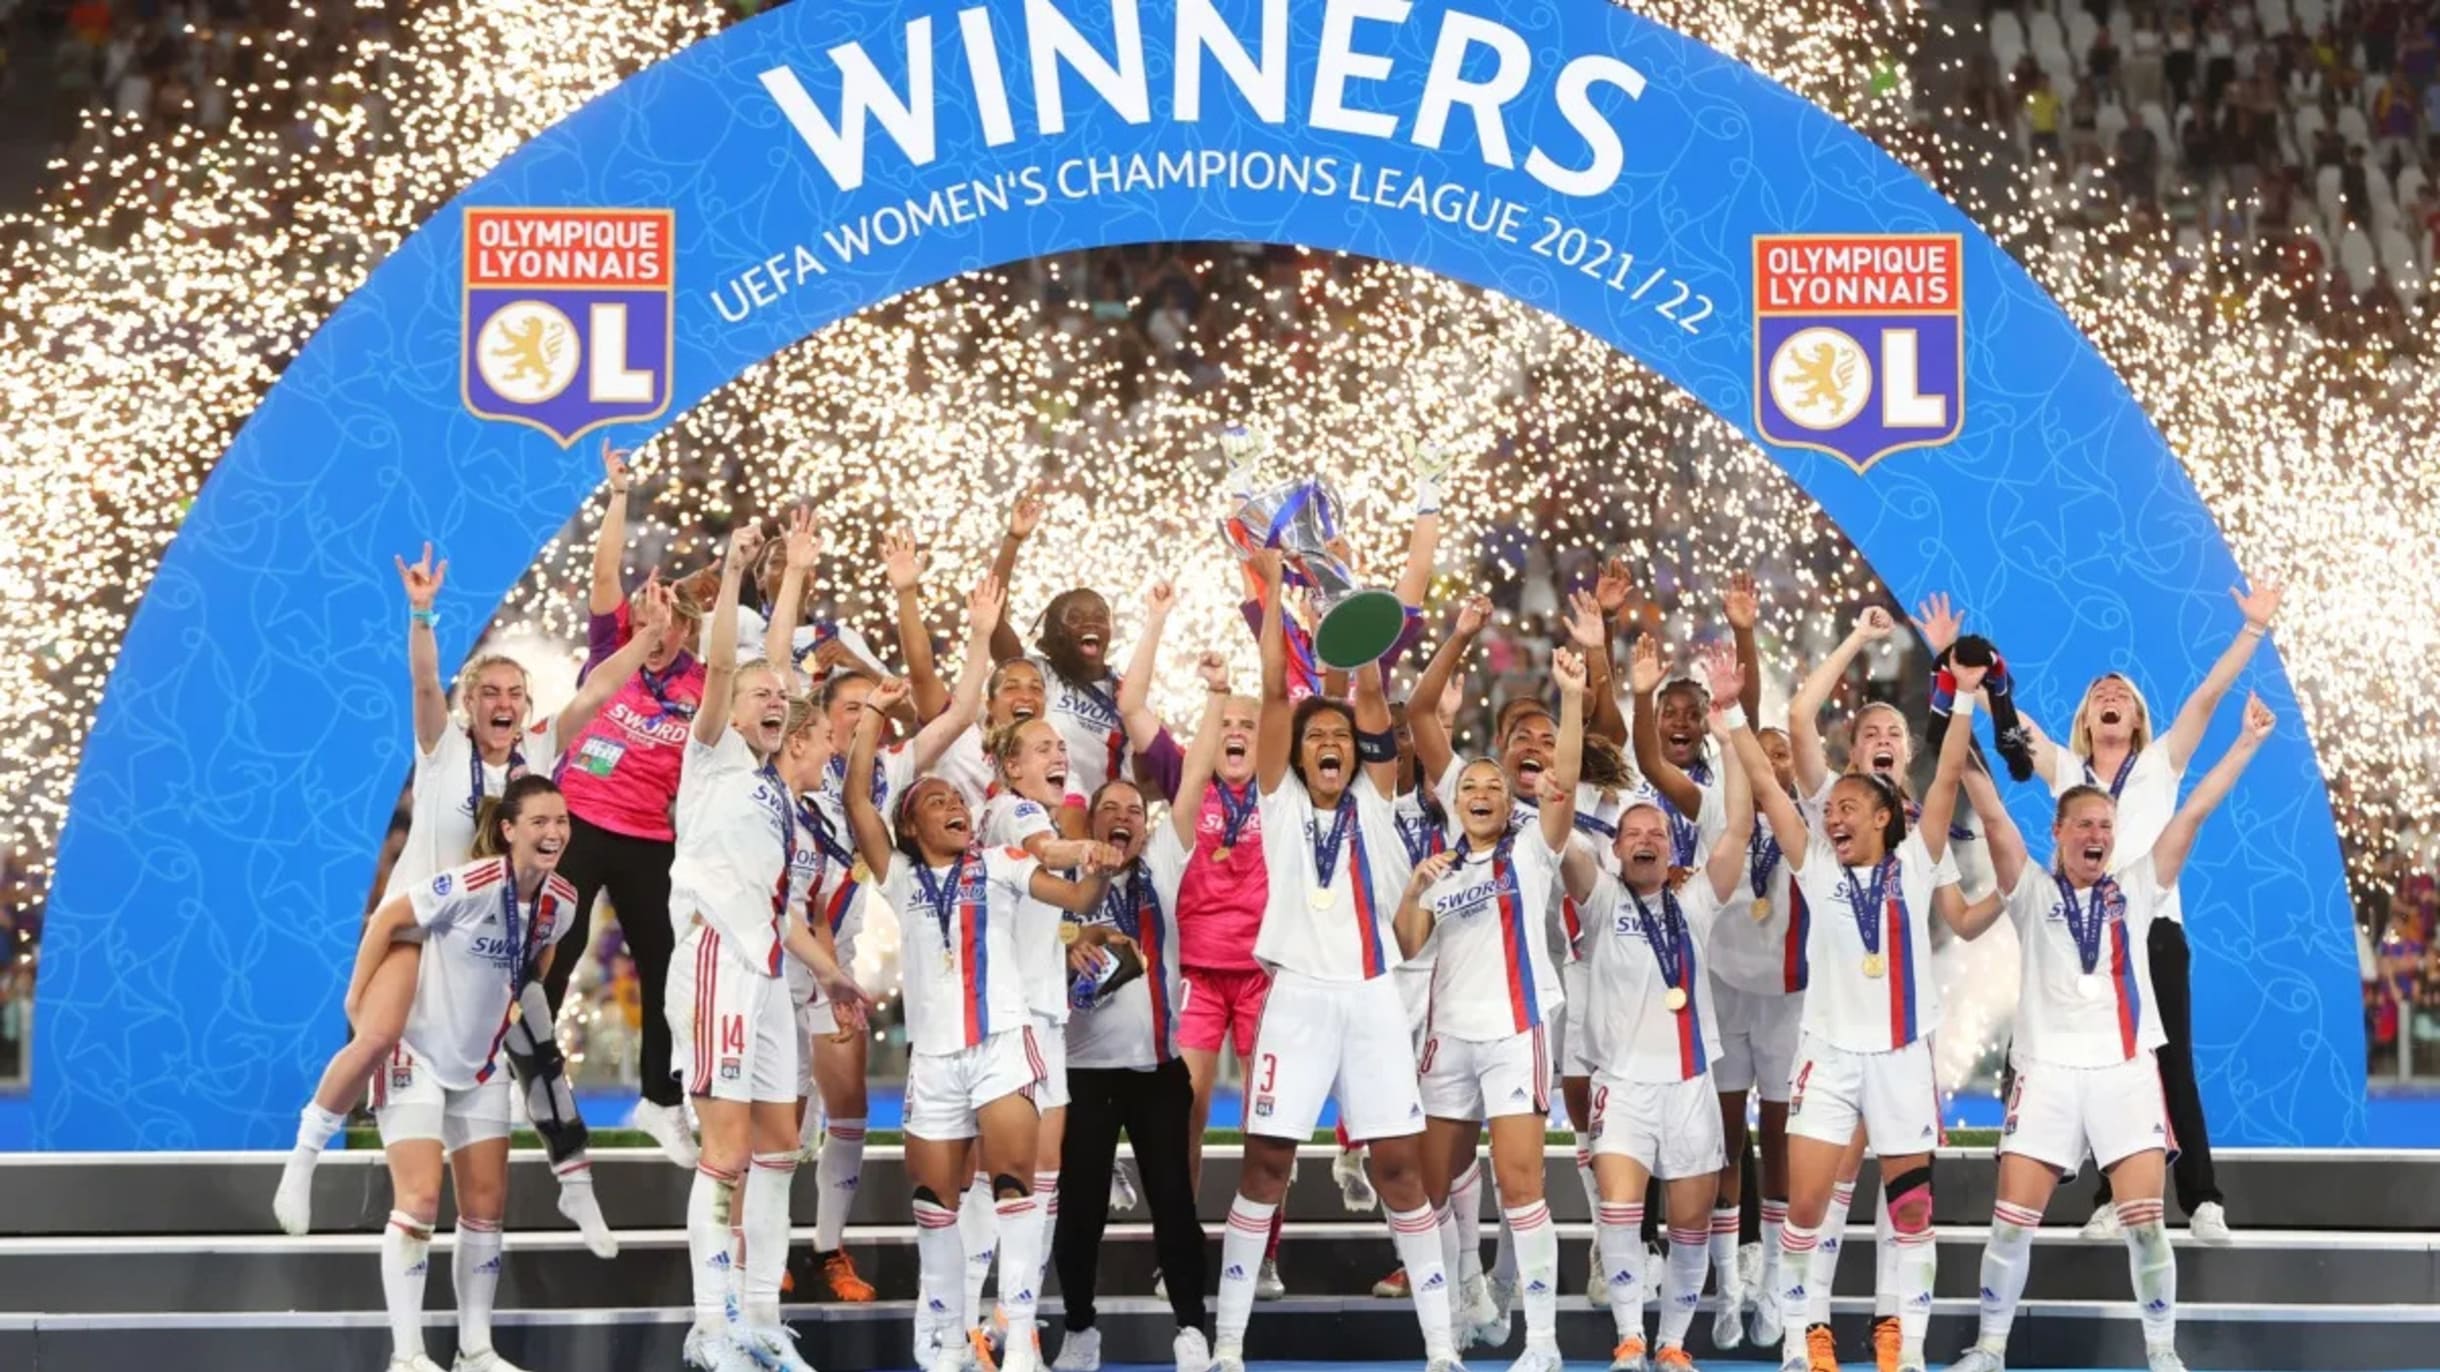 Champions League Feminina: Todos os campeões e artilharia